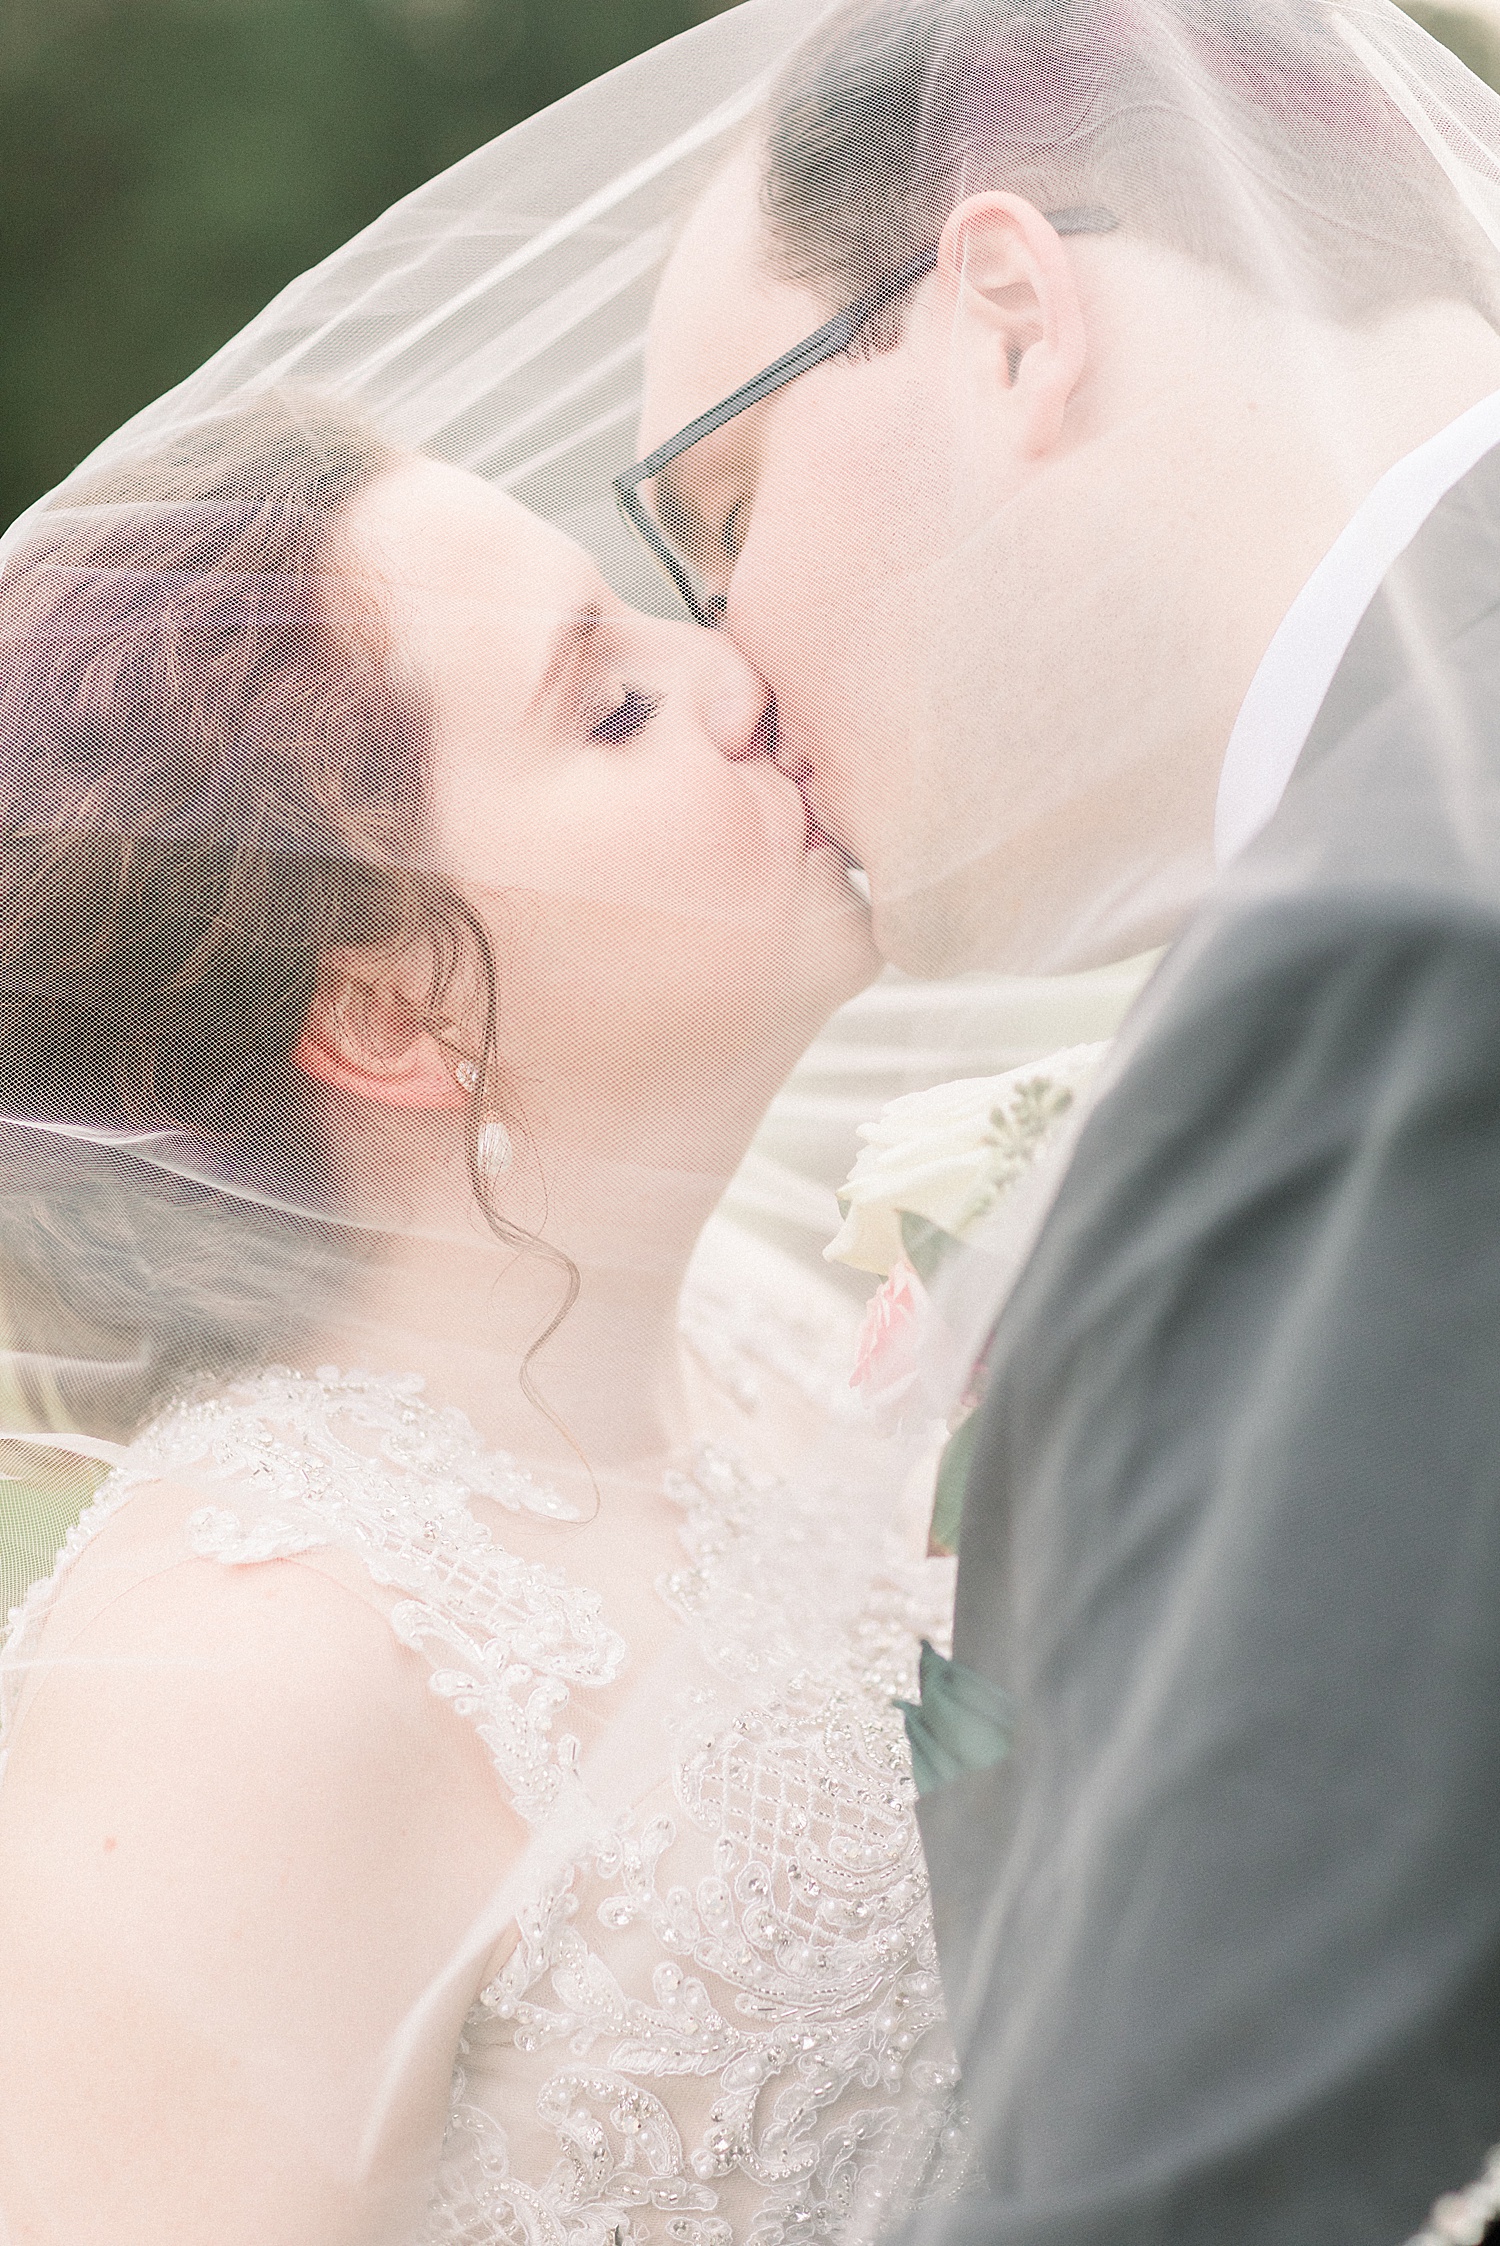 couple kisses under bride's veil during portraits